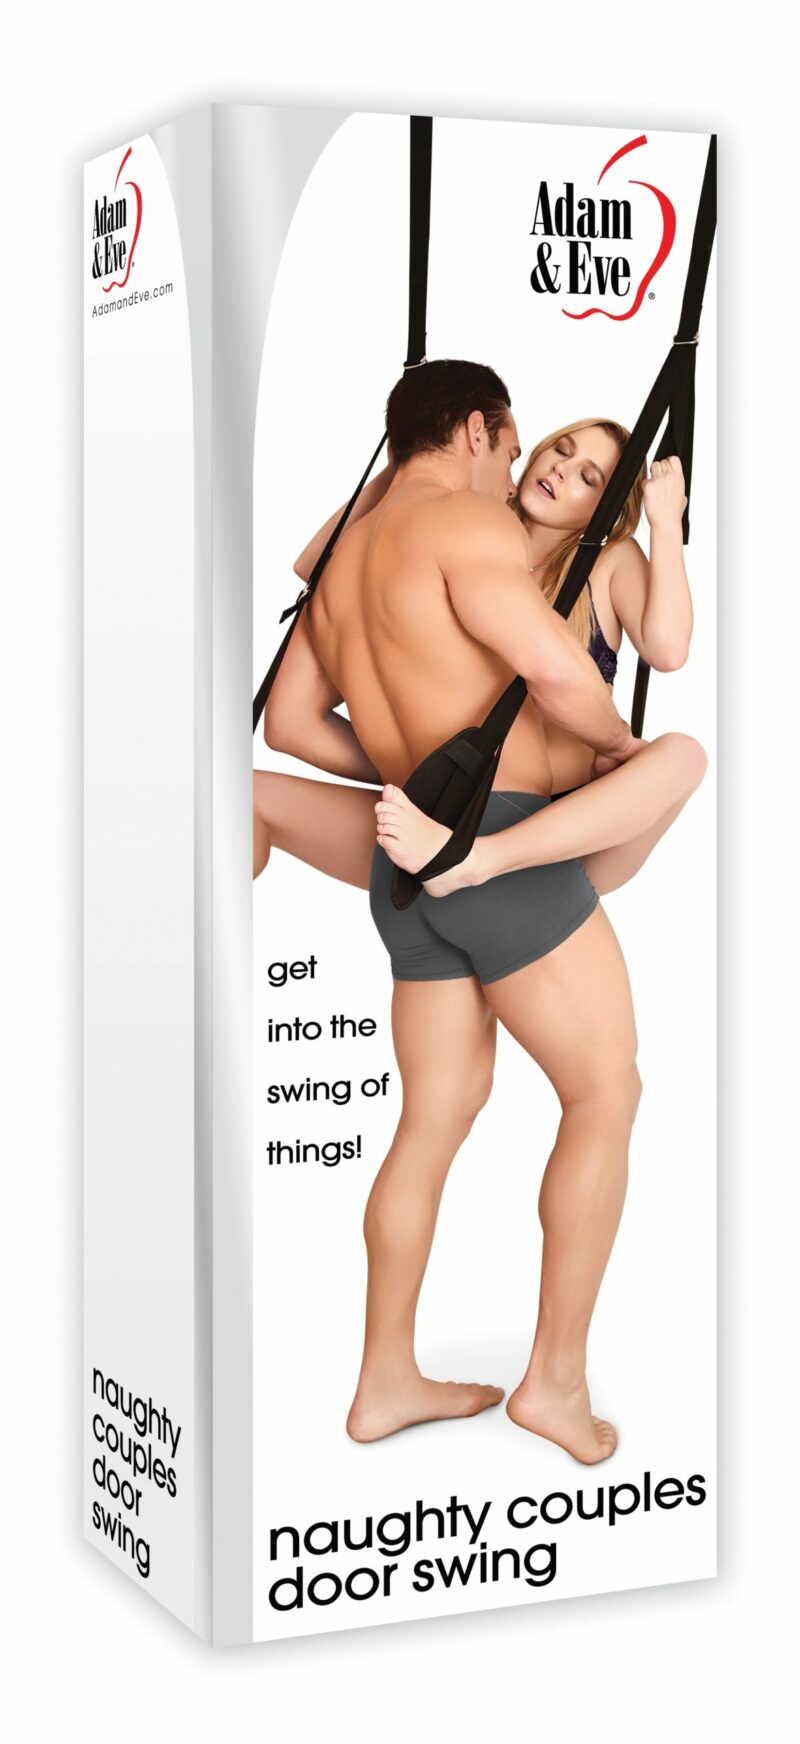 Adam & Eve Naughty Couples Door Swing